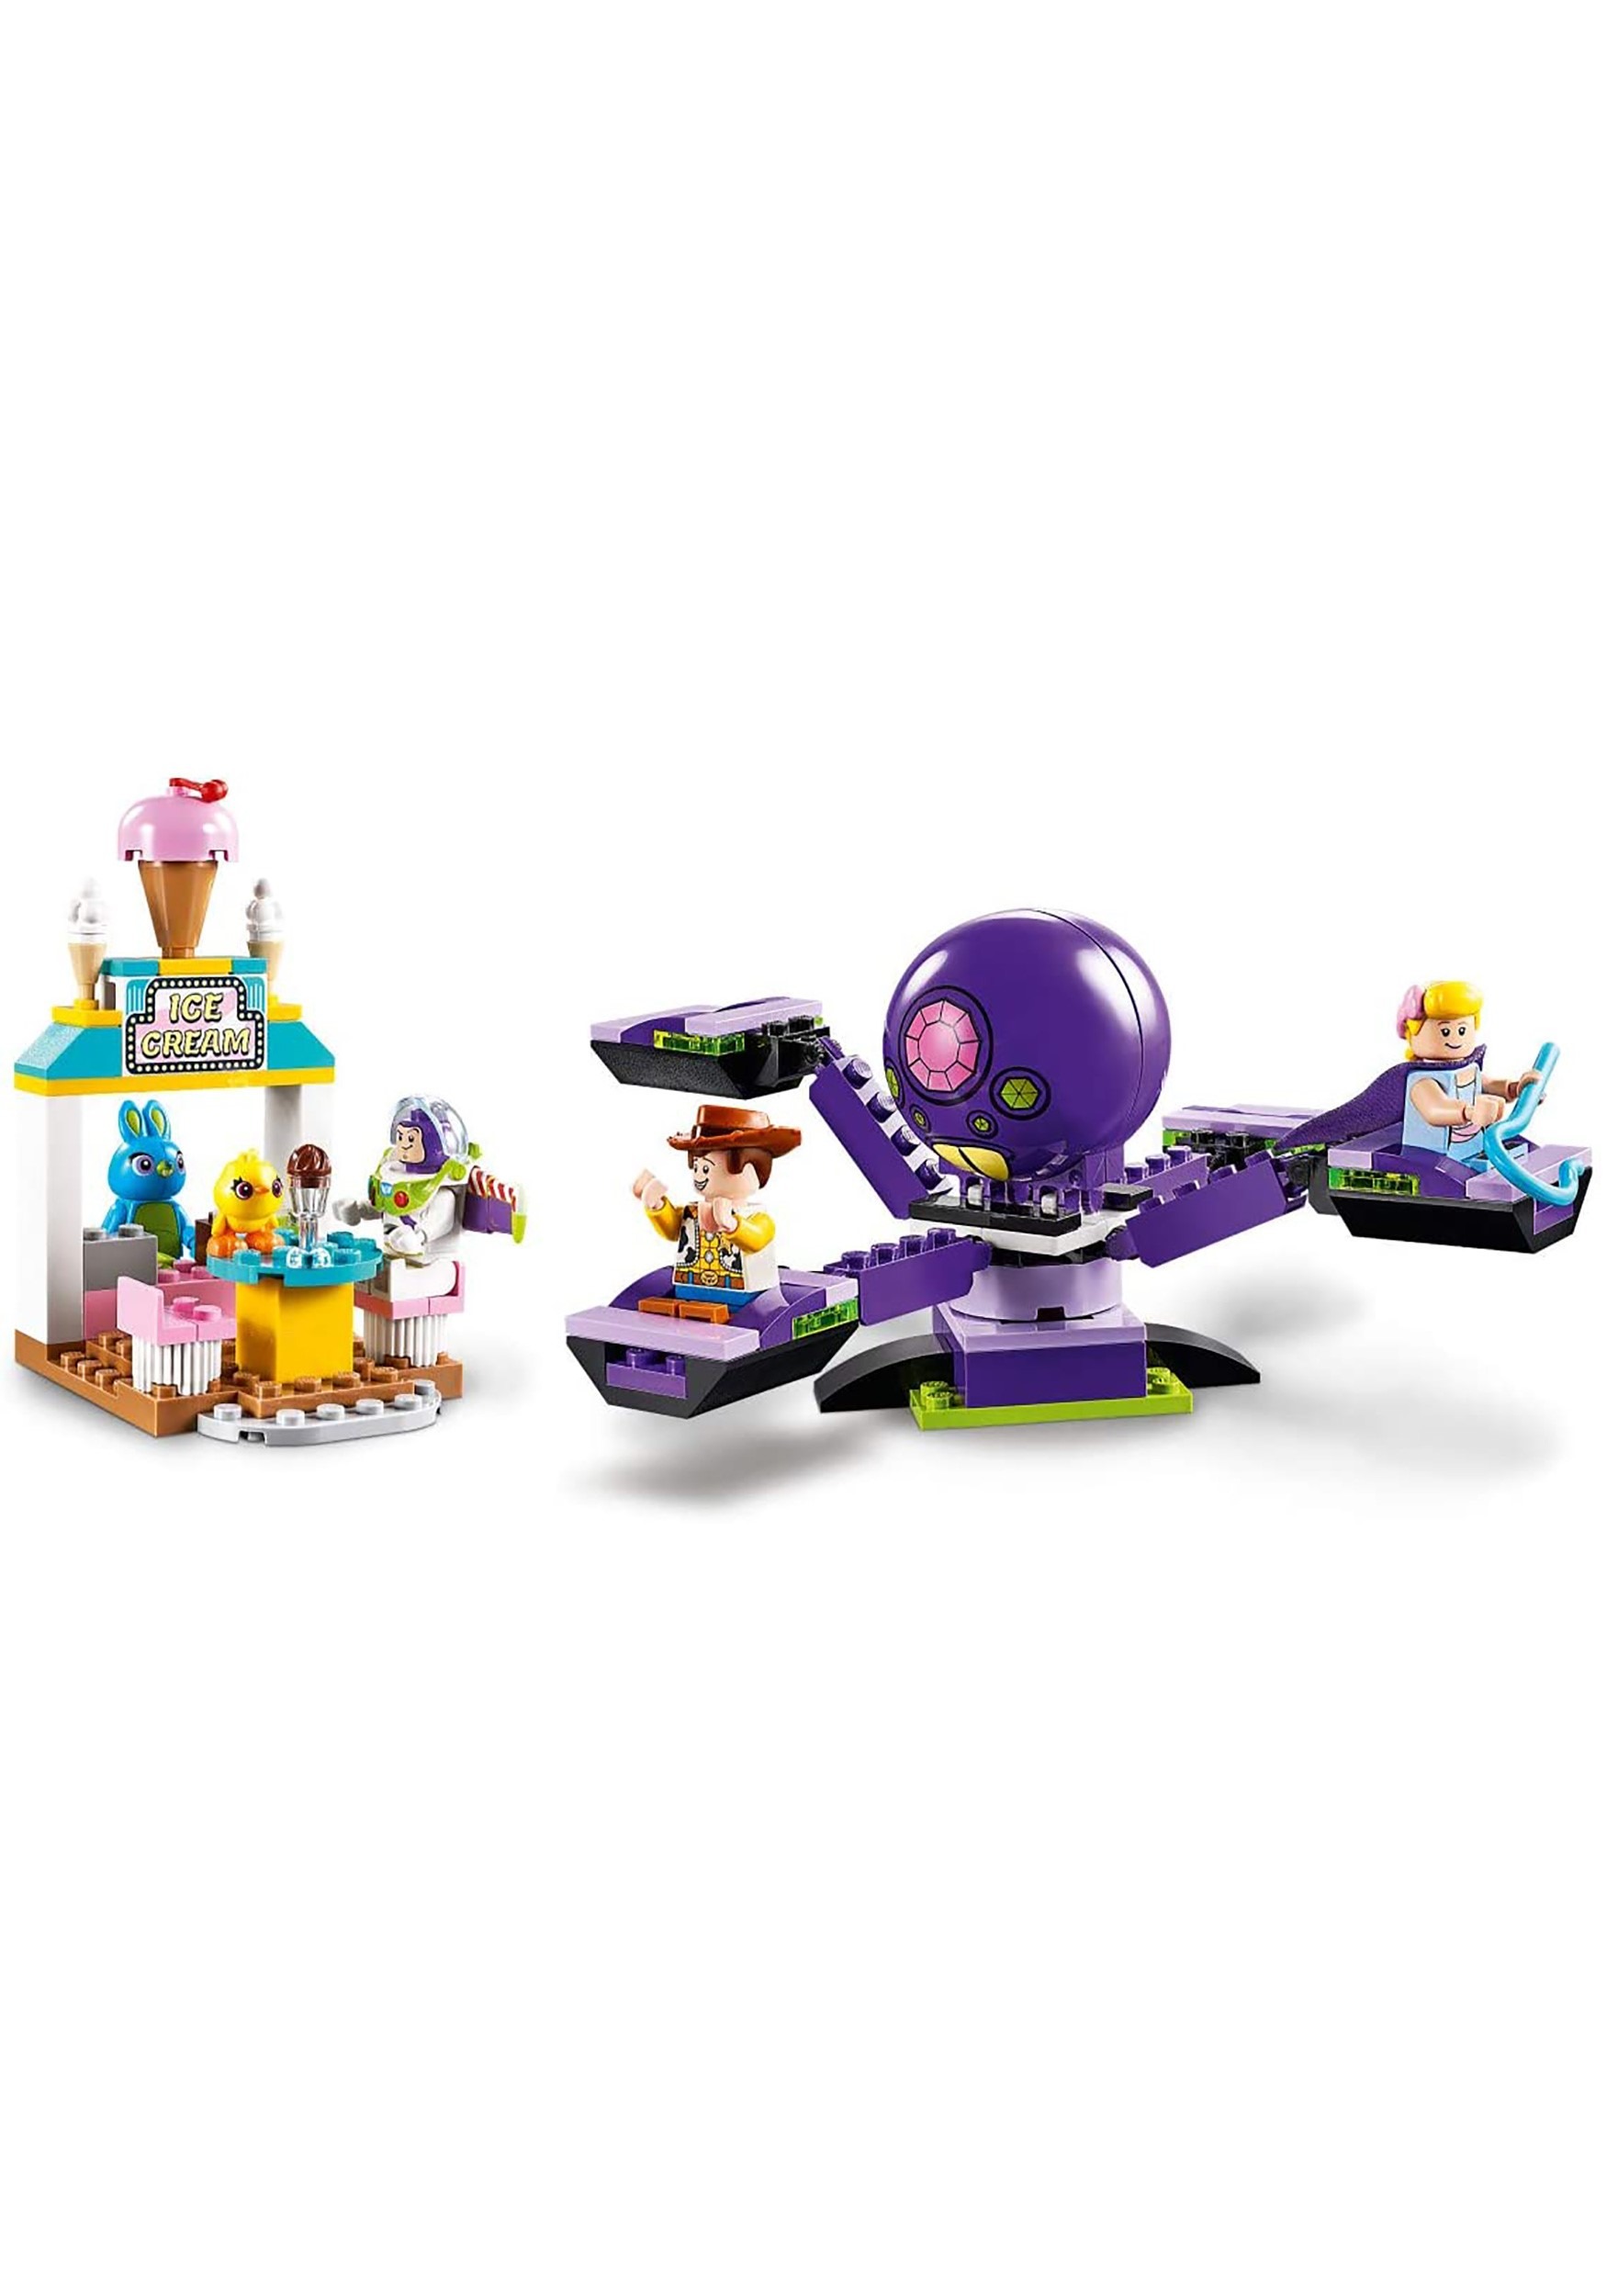 LEGO Disney Pixar’s Toy Story 4 Buzz & Woody’s Carnival Mania 10770 Building Kit New 2019 230 Piece